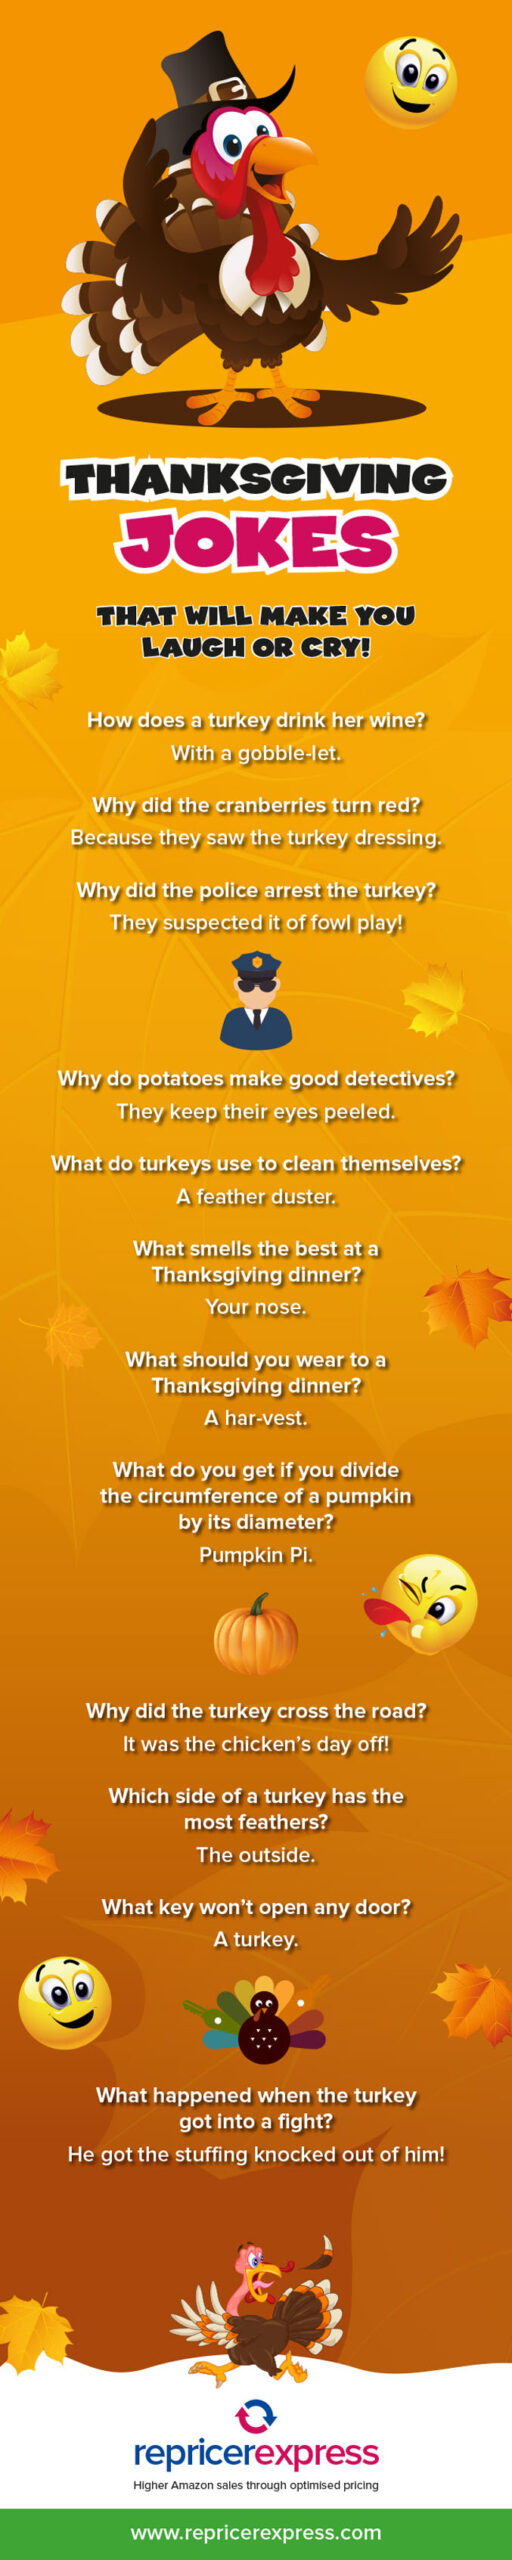 Infographic Thanksgiving Jokes  RepricerExpress